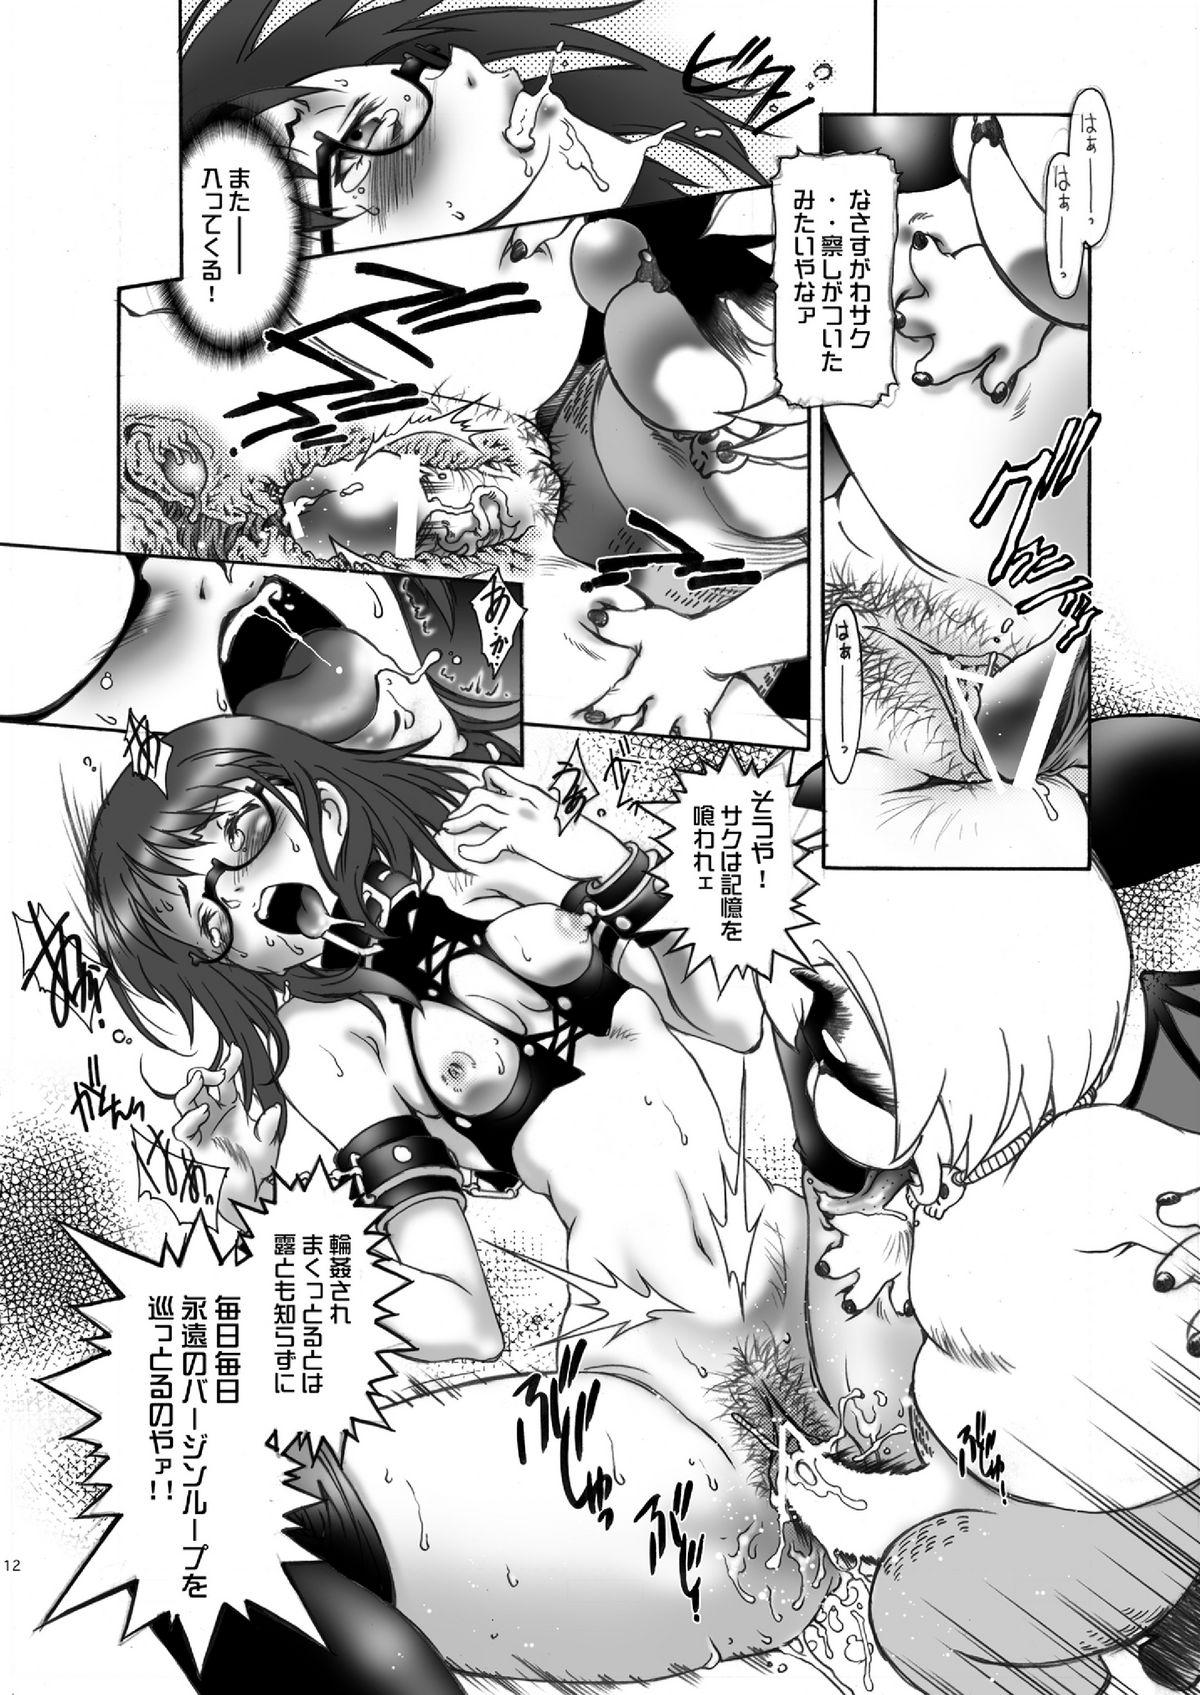 Female Orgasm Ittemasuyo! Saku-chan. - Yondemasuyo azazel san Gordibuena - Page 12